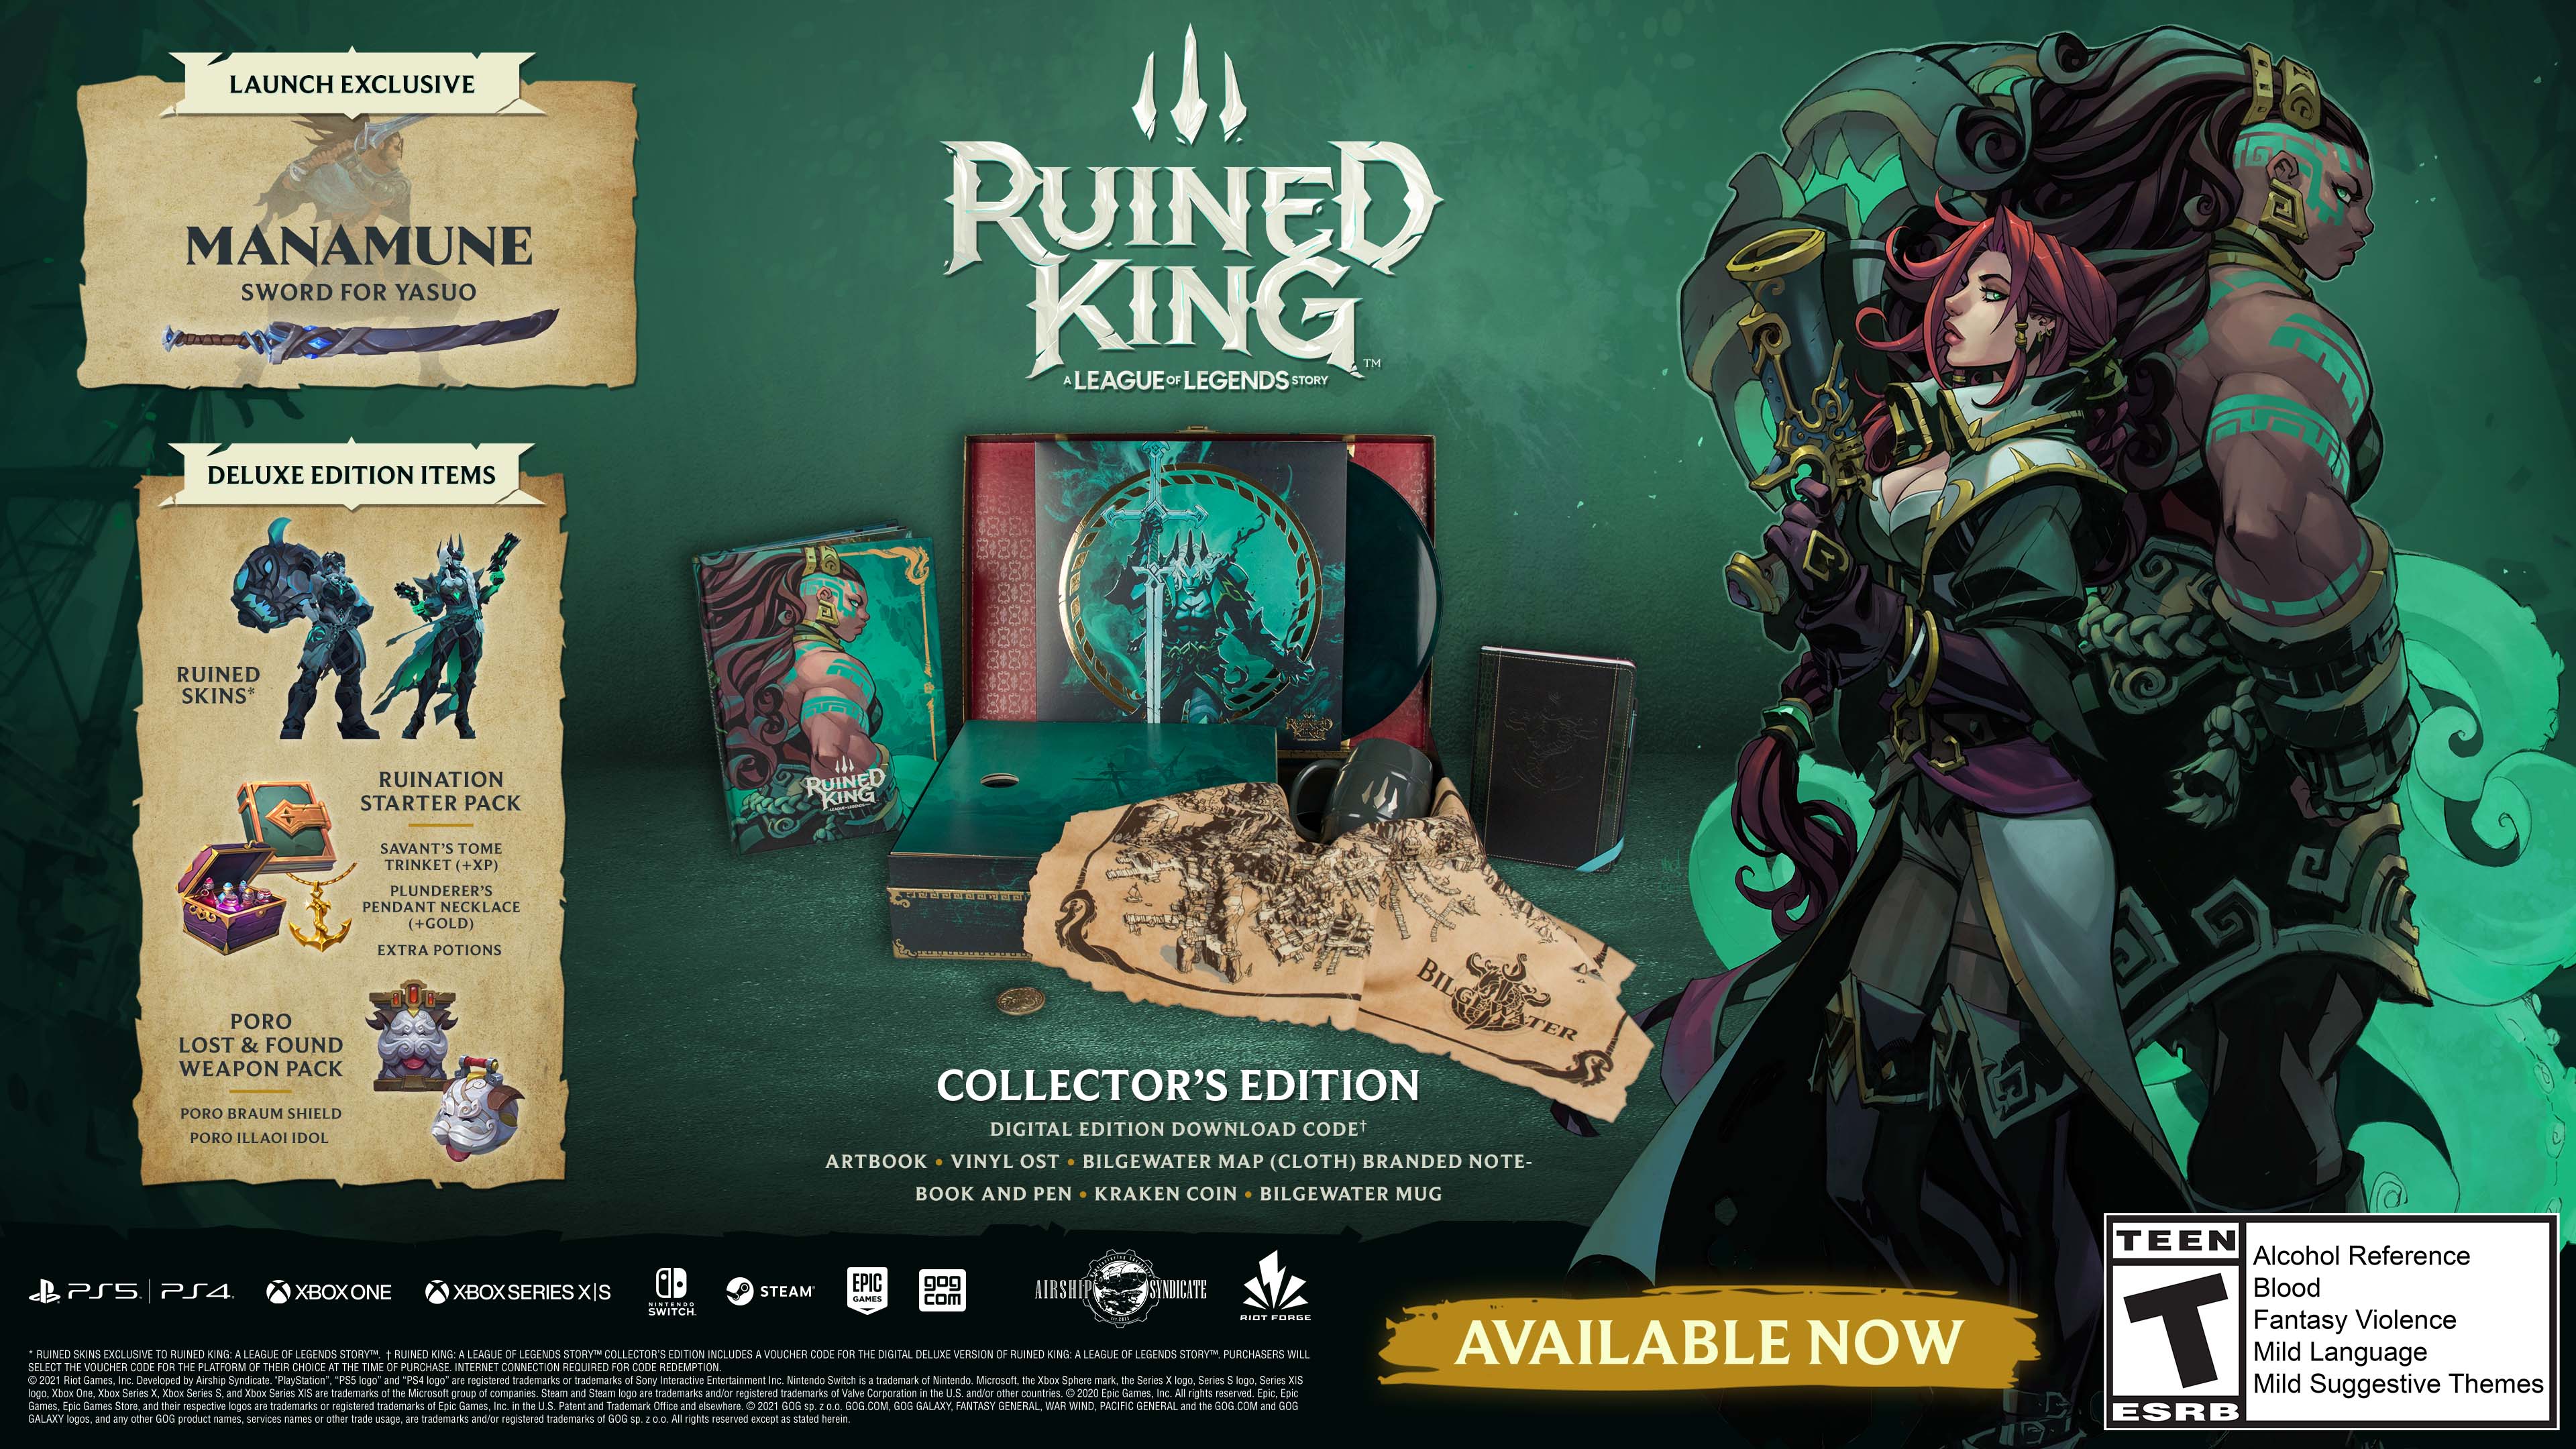 Ruined King: A League of Legends Story' vai ser lançado para PC e consoles  em 2021 